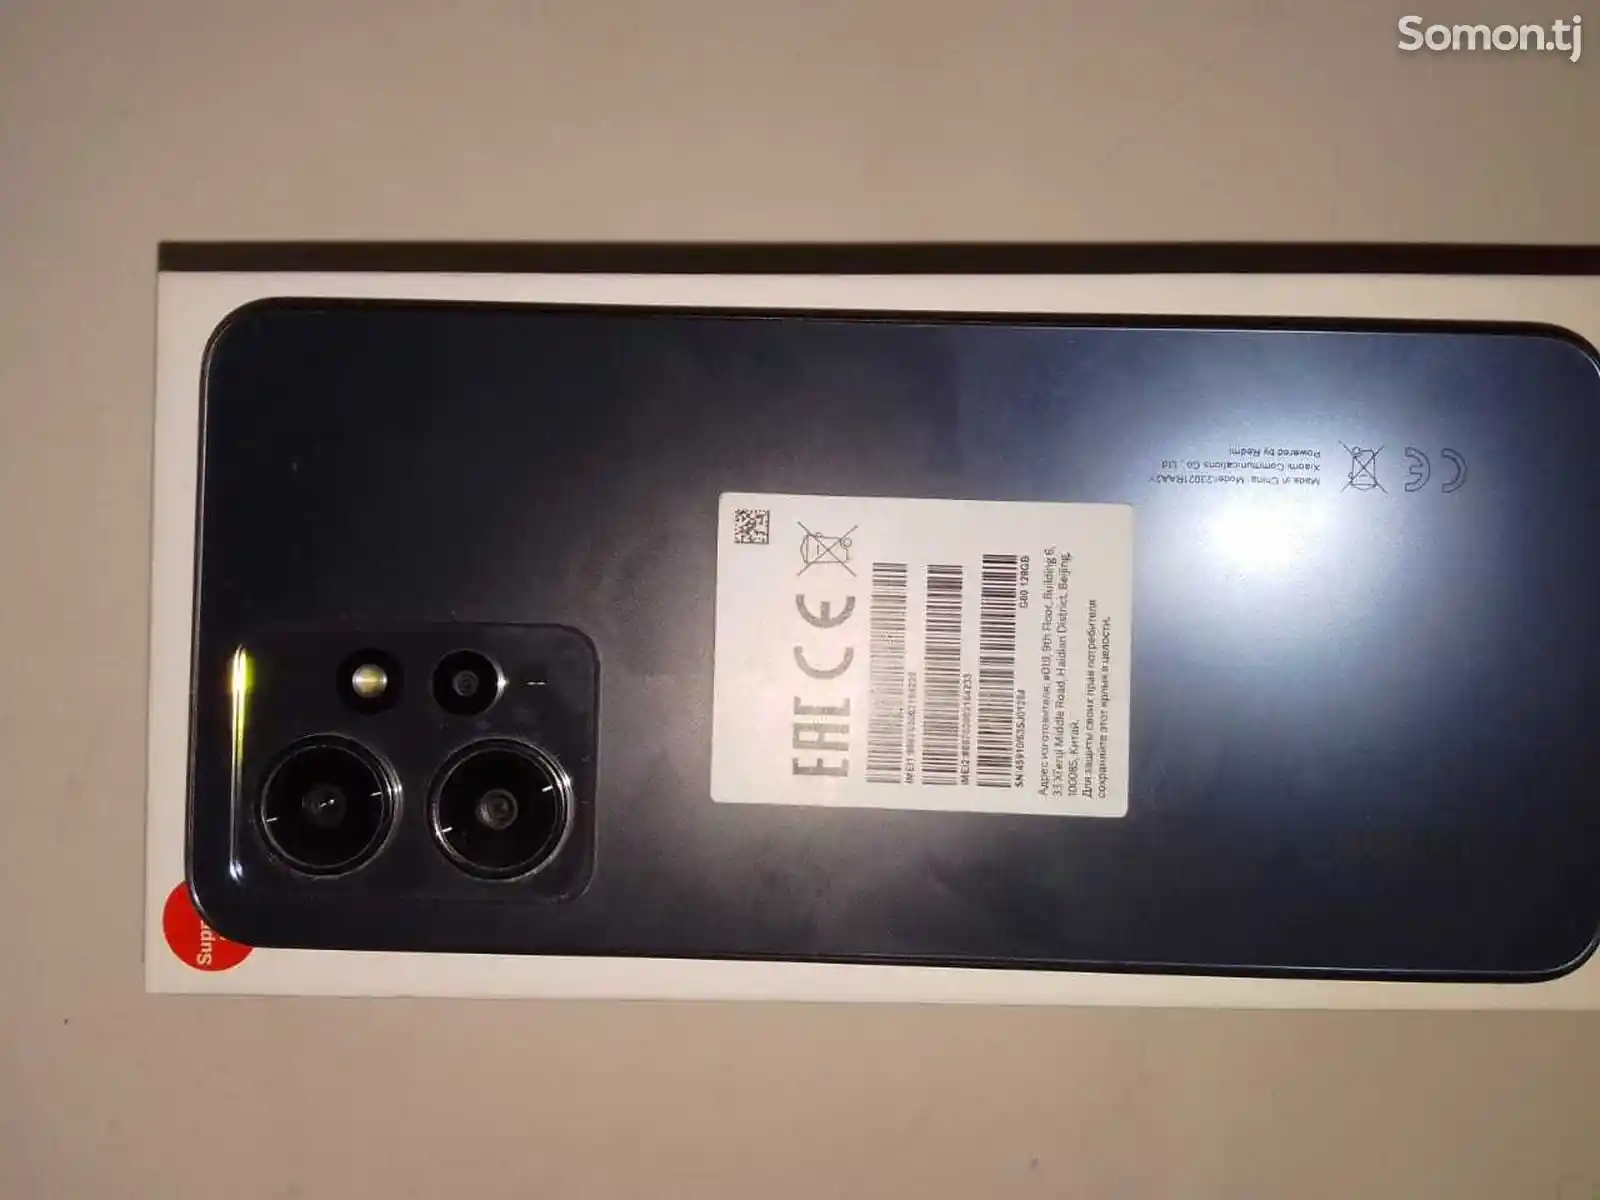 Xiaomi Redmi Note 12-6